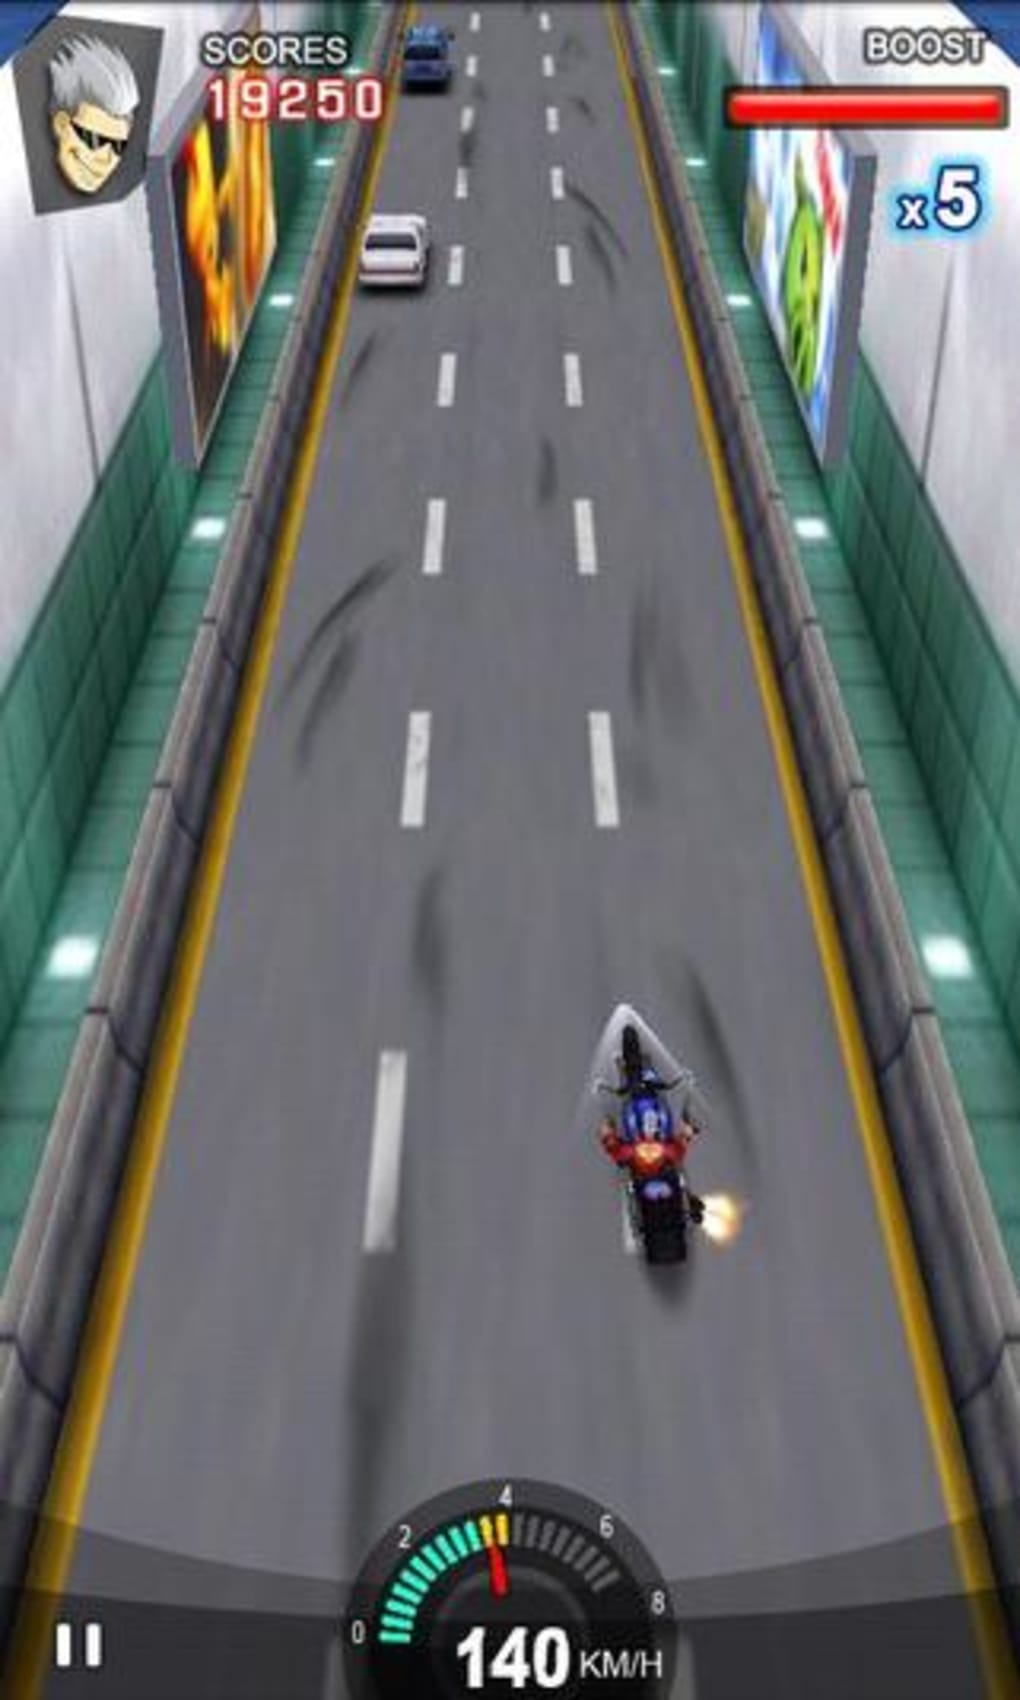 Moto x racing games online